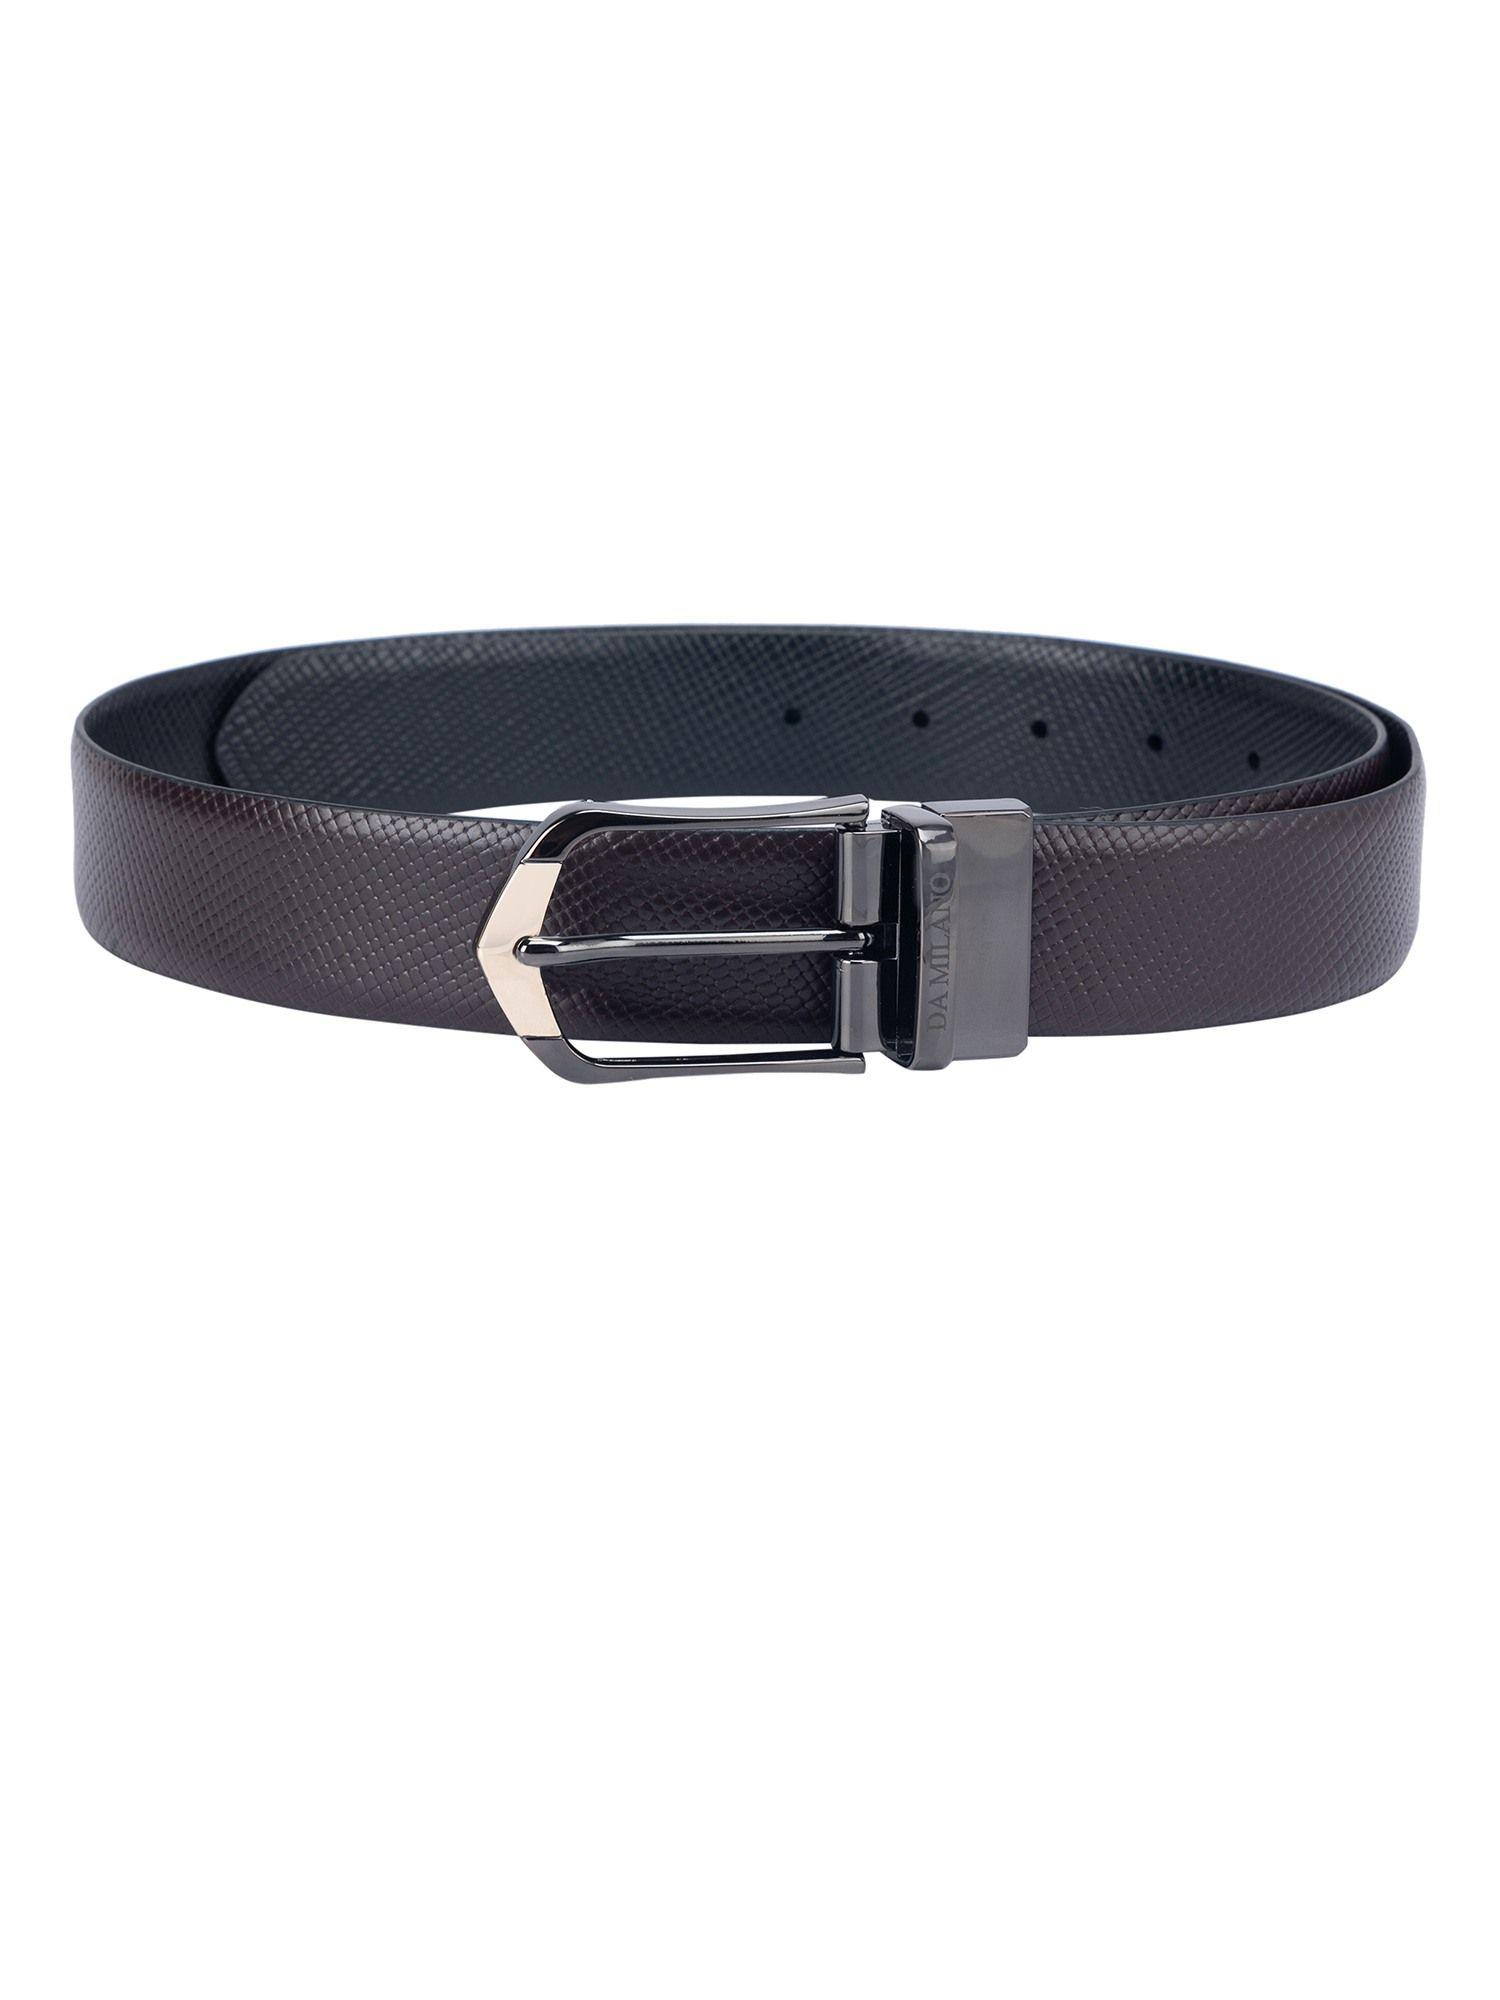 genuine leather brown & black reversible belt